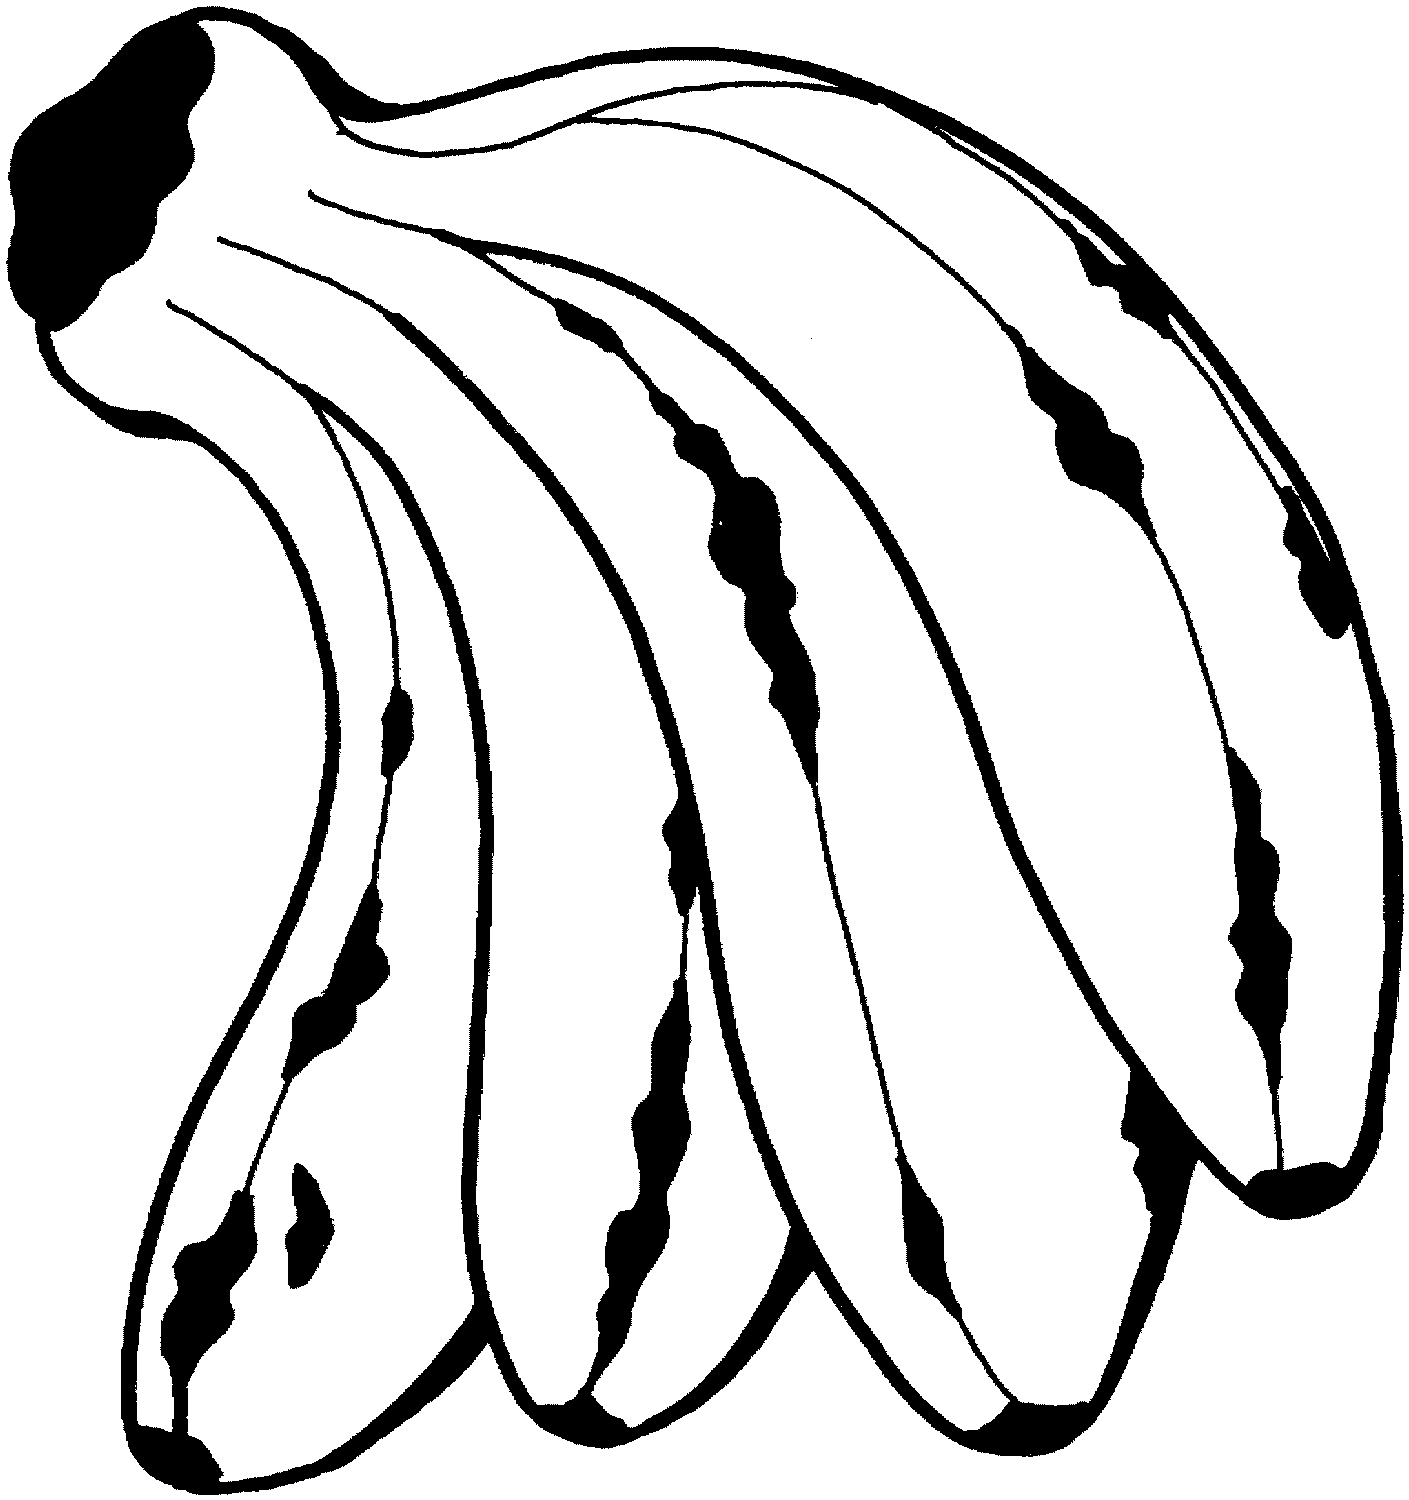 Four Delicious Bananas